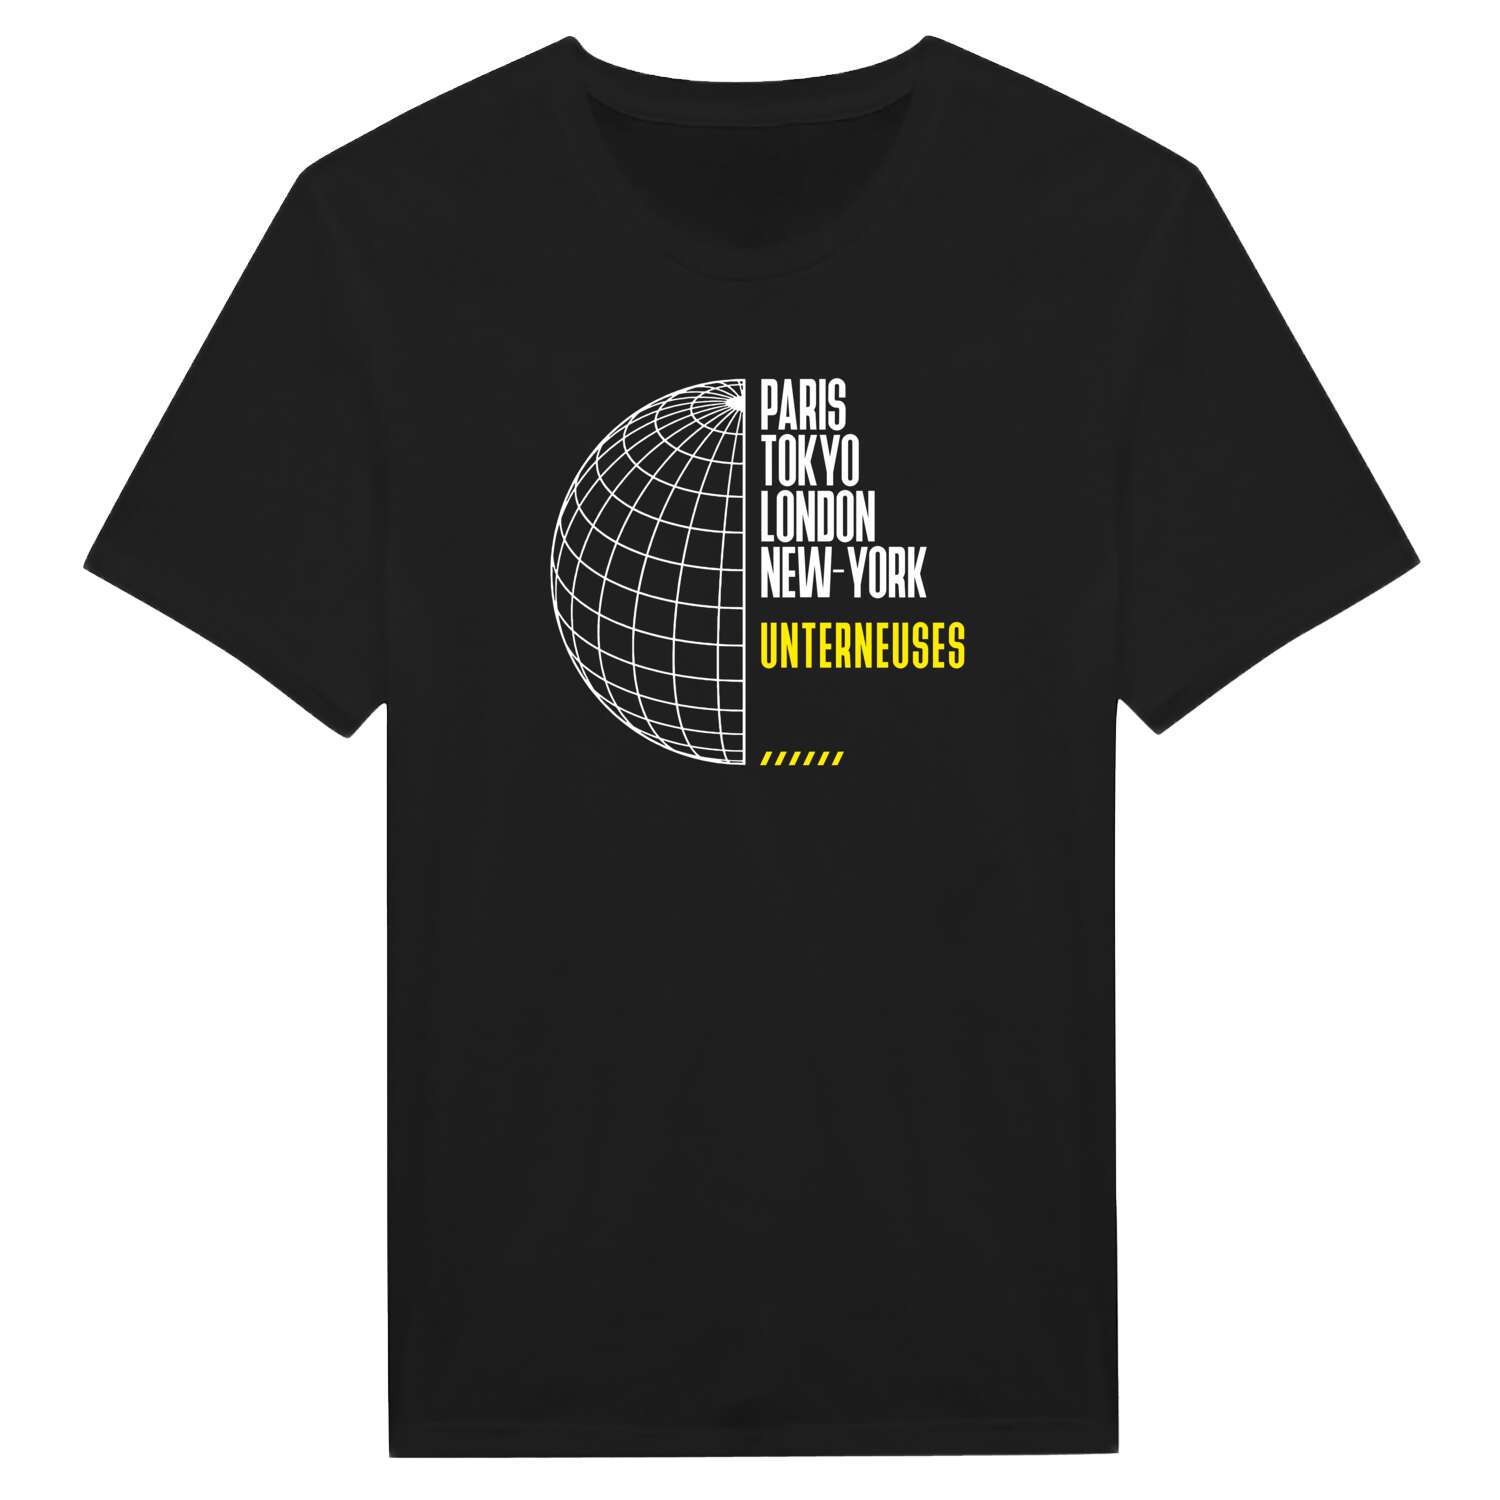 Unterneuses T-Shirt »Paris Tokyo London«